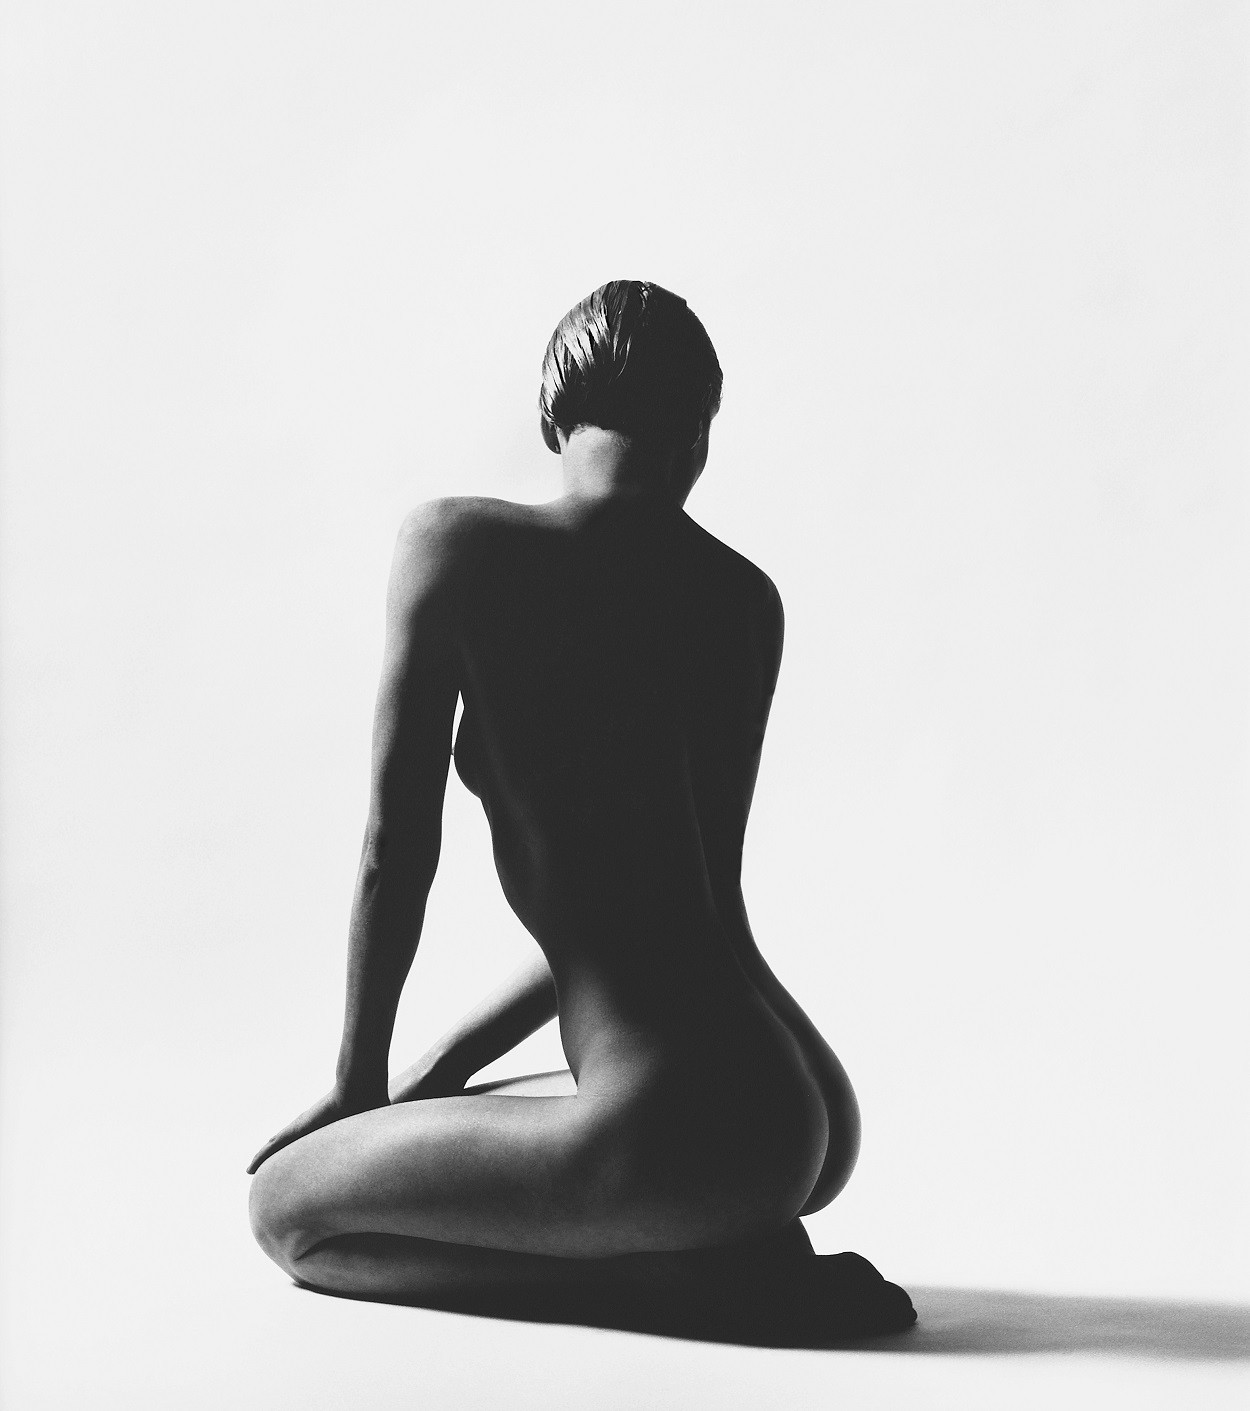 Photographie d'une femme nue de dos réalisé par le photographe de mode Ormond Gigli.